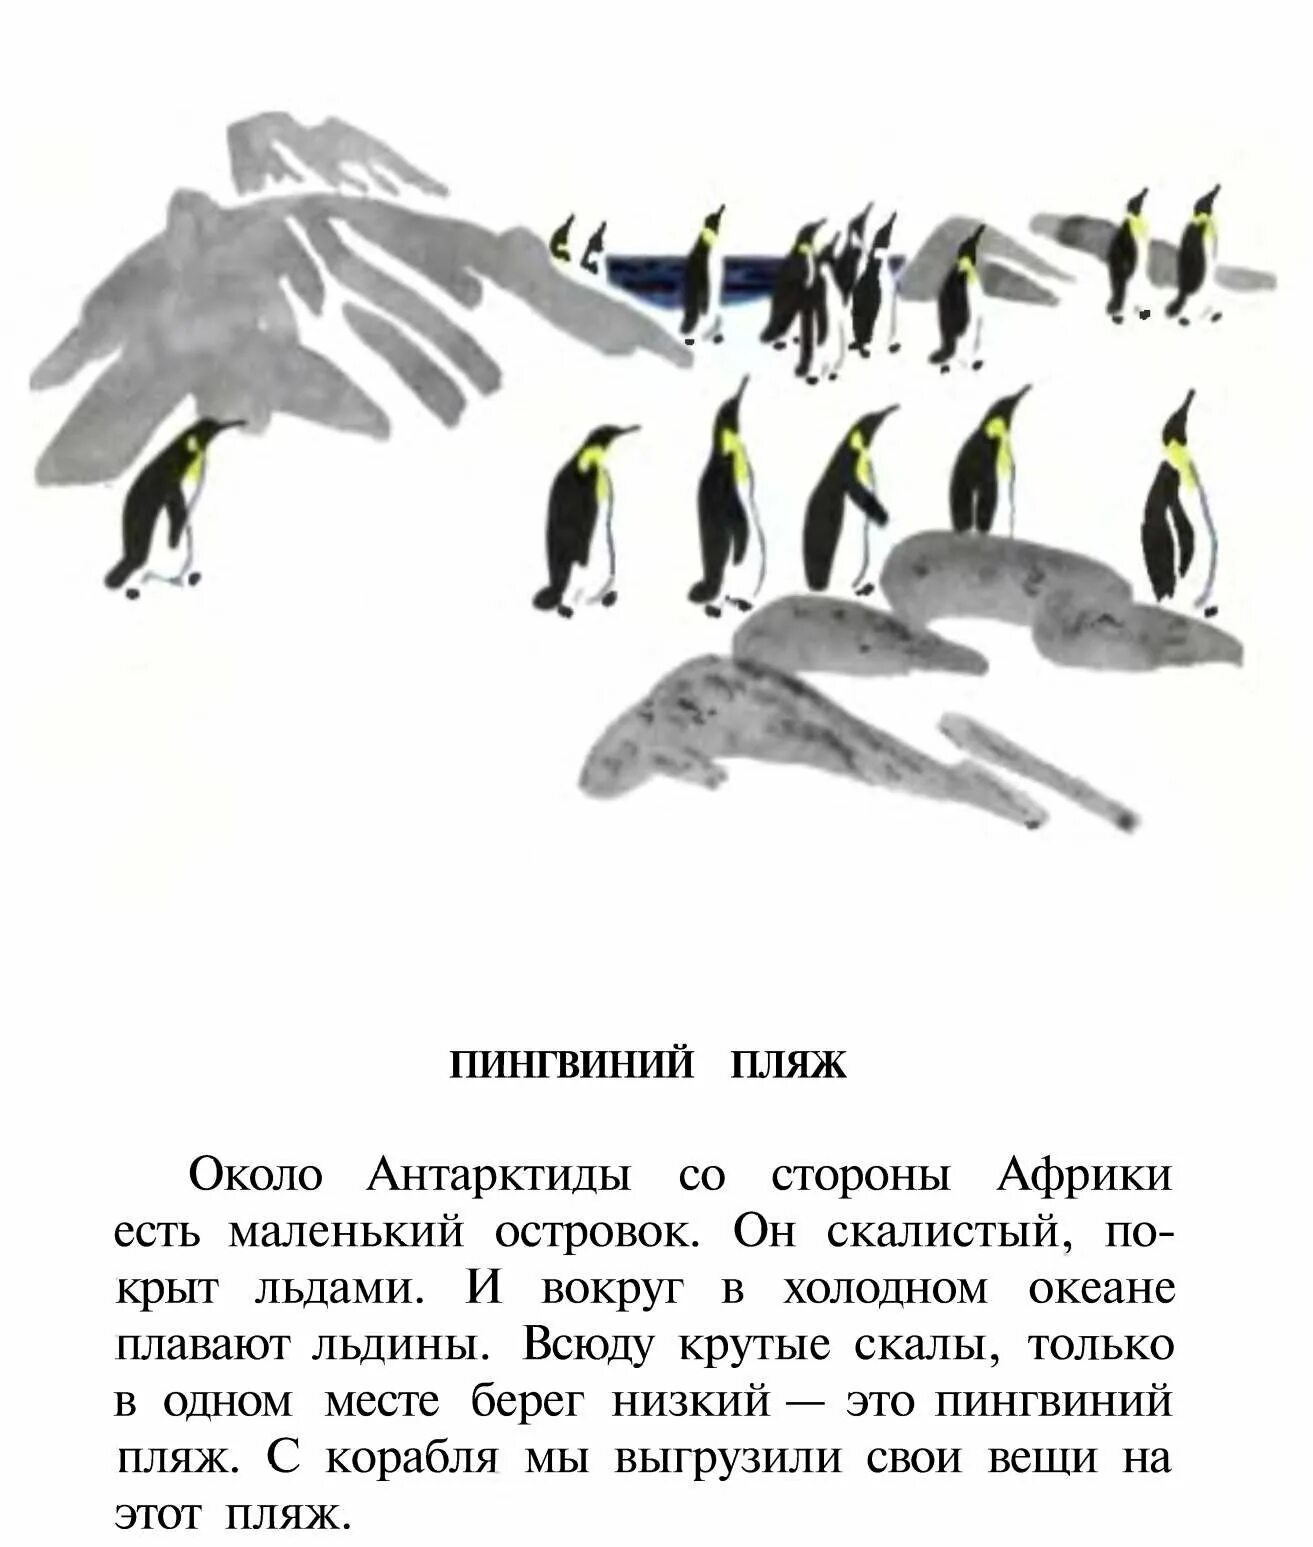 Рассказ про пингвинов Снегирев. Г Снегирева про пингвинов рассказ. Чтение рассказа Снегирева Пингвиний пляж. Снегирев рассказы про пингвинов читать